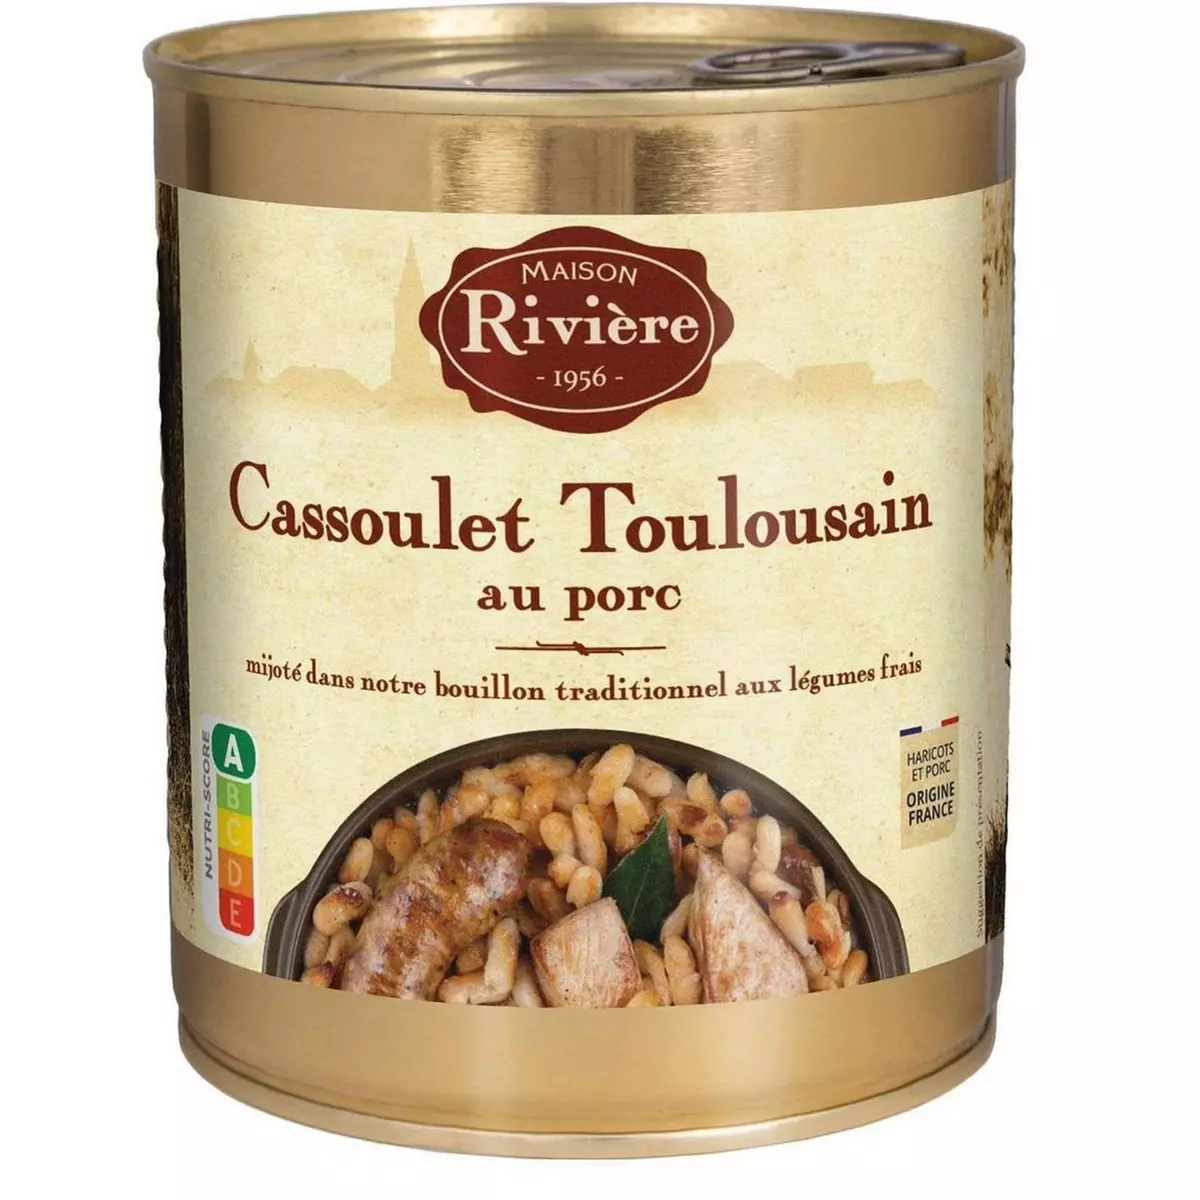 MAISON RIVIERE Cassoulet toulousain au porc 840g